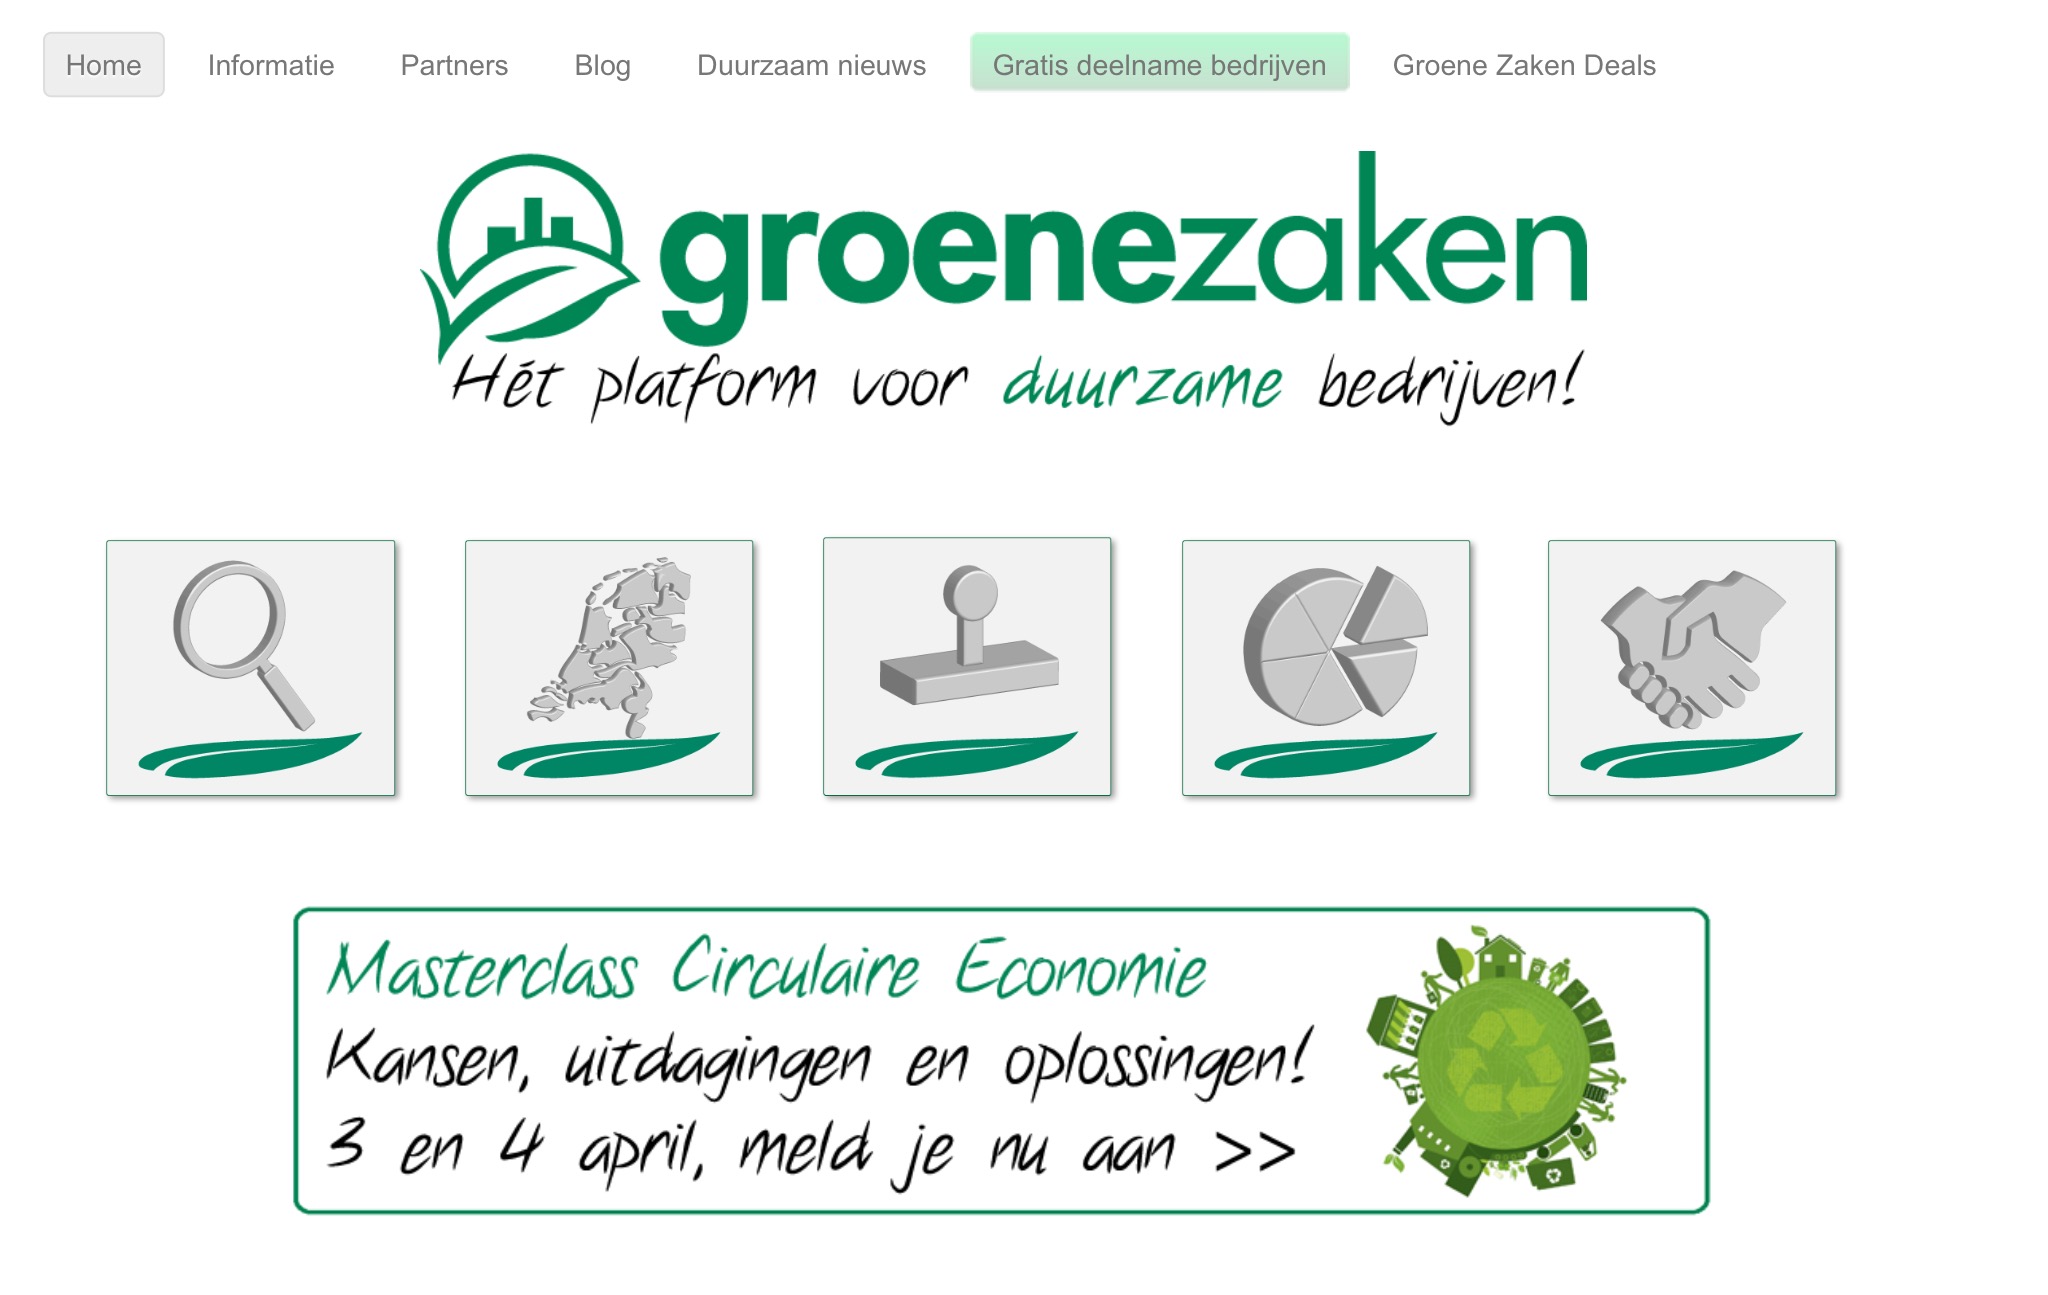 Je bekijkt nu Happy Planet Professionals als keurmerk opgenomen op website Groene Zaken